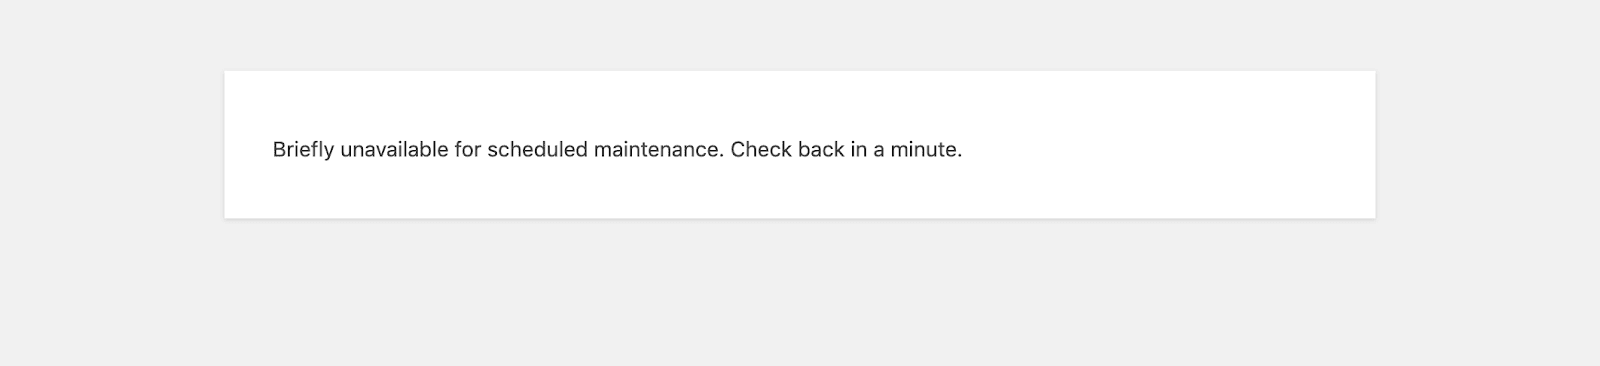 unavailable-scheduled-maintenance-1